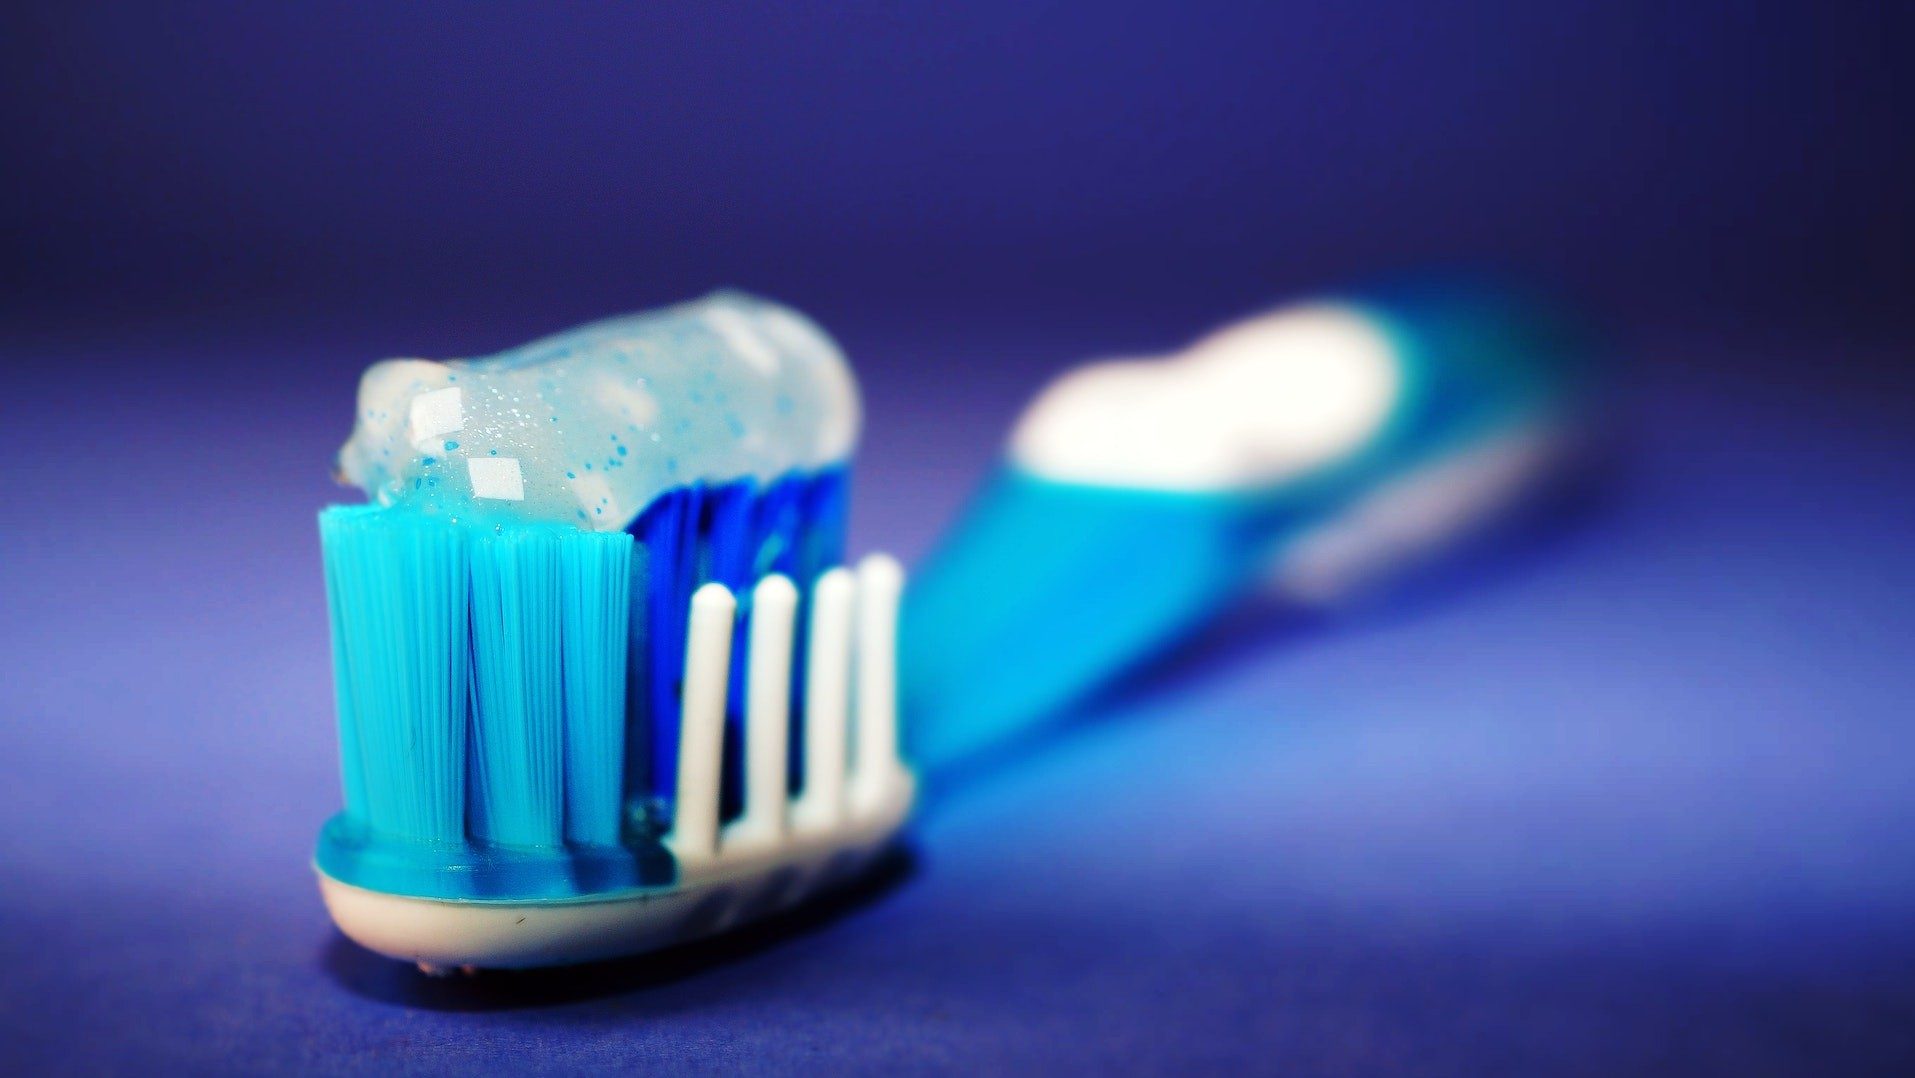 Gut für die Mundhygiene: Nahaufnahme von Zahnpasta auf einer Zahnbürste